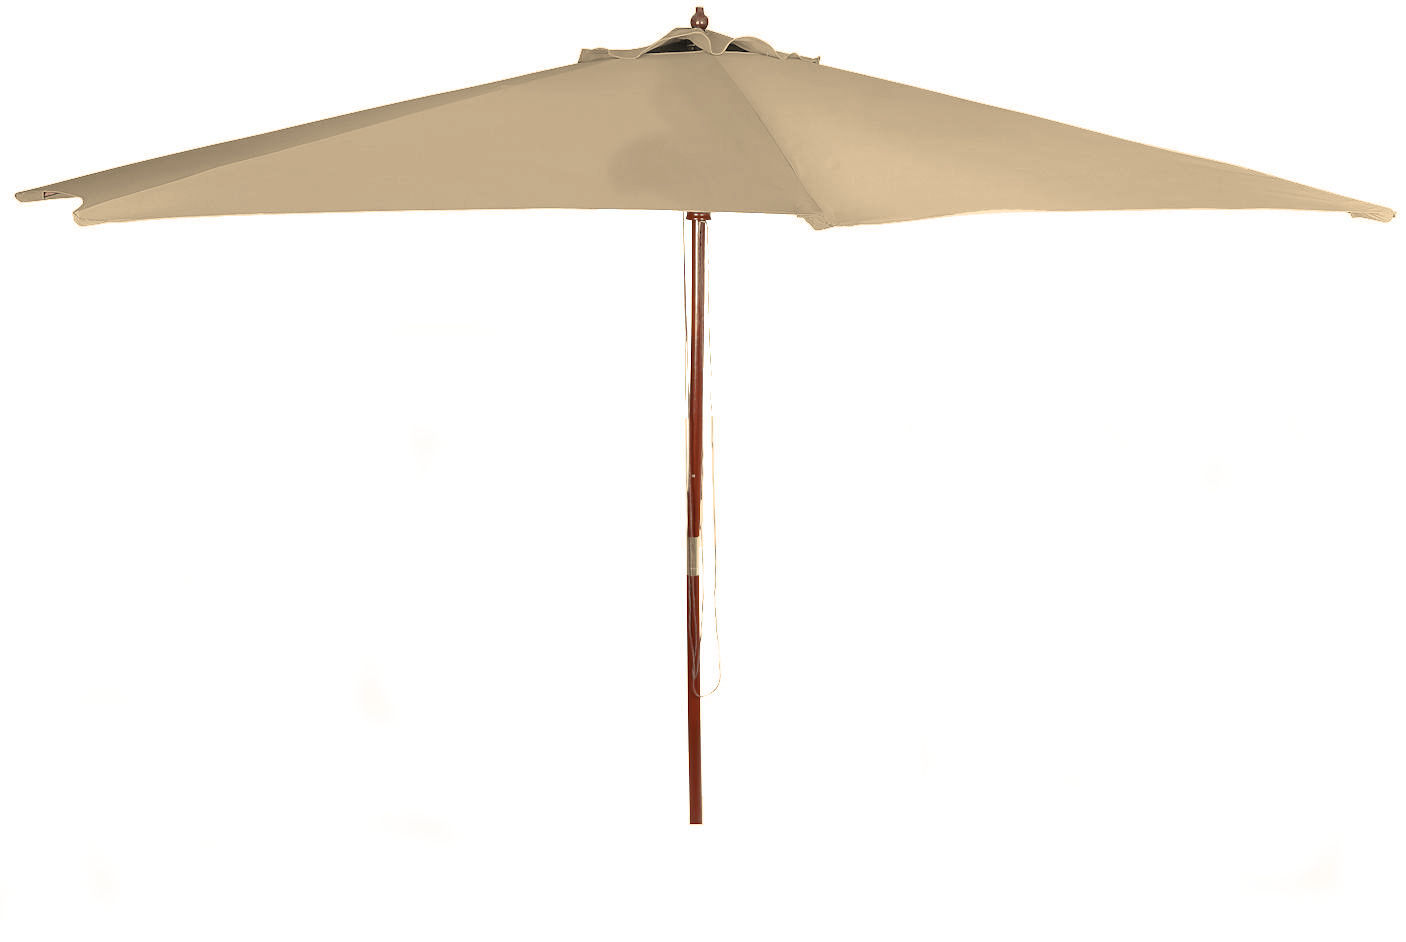 Schirm Gartenschirm Marktschirm natur oder anthrazit Holz Sonnenschirm 3m 